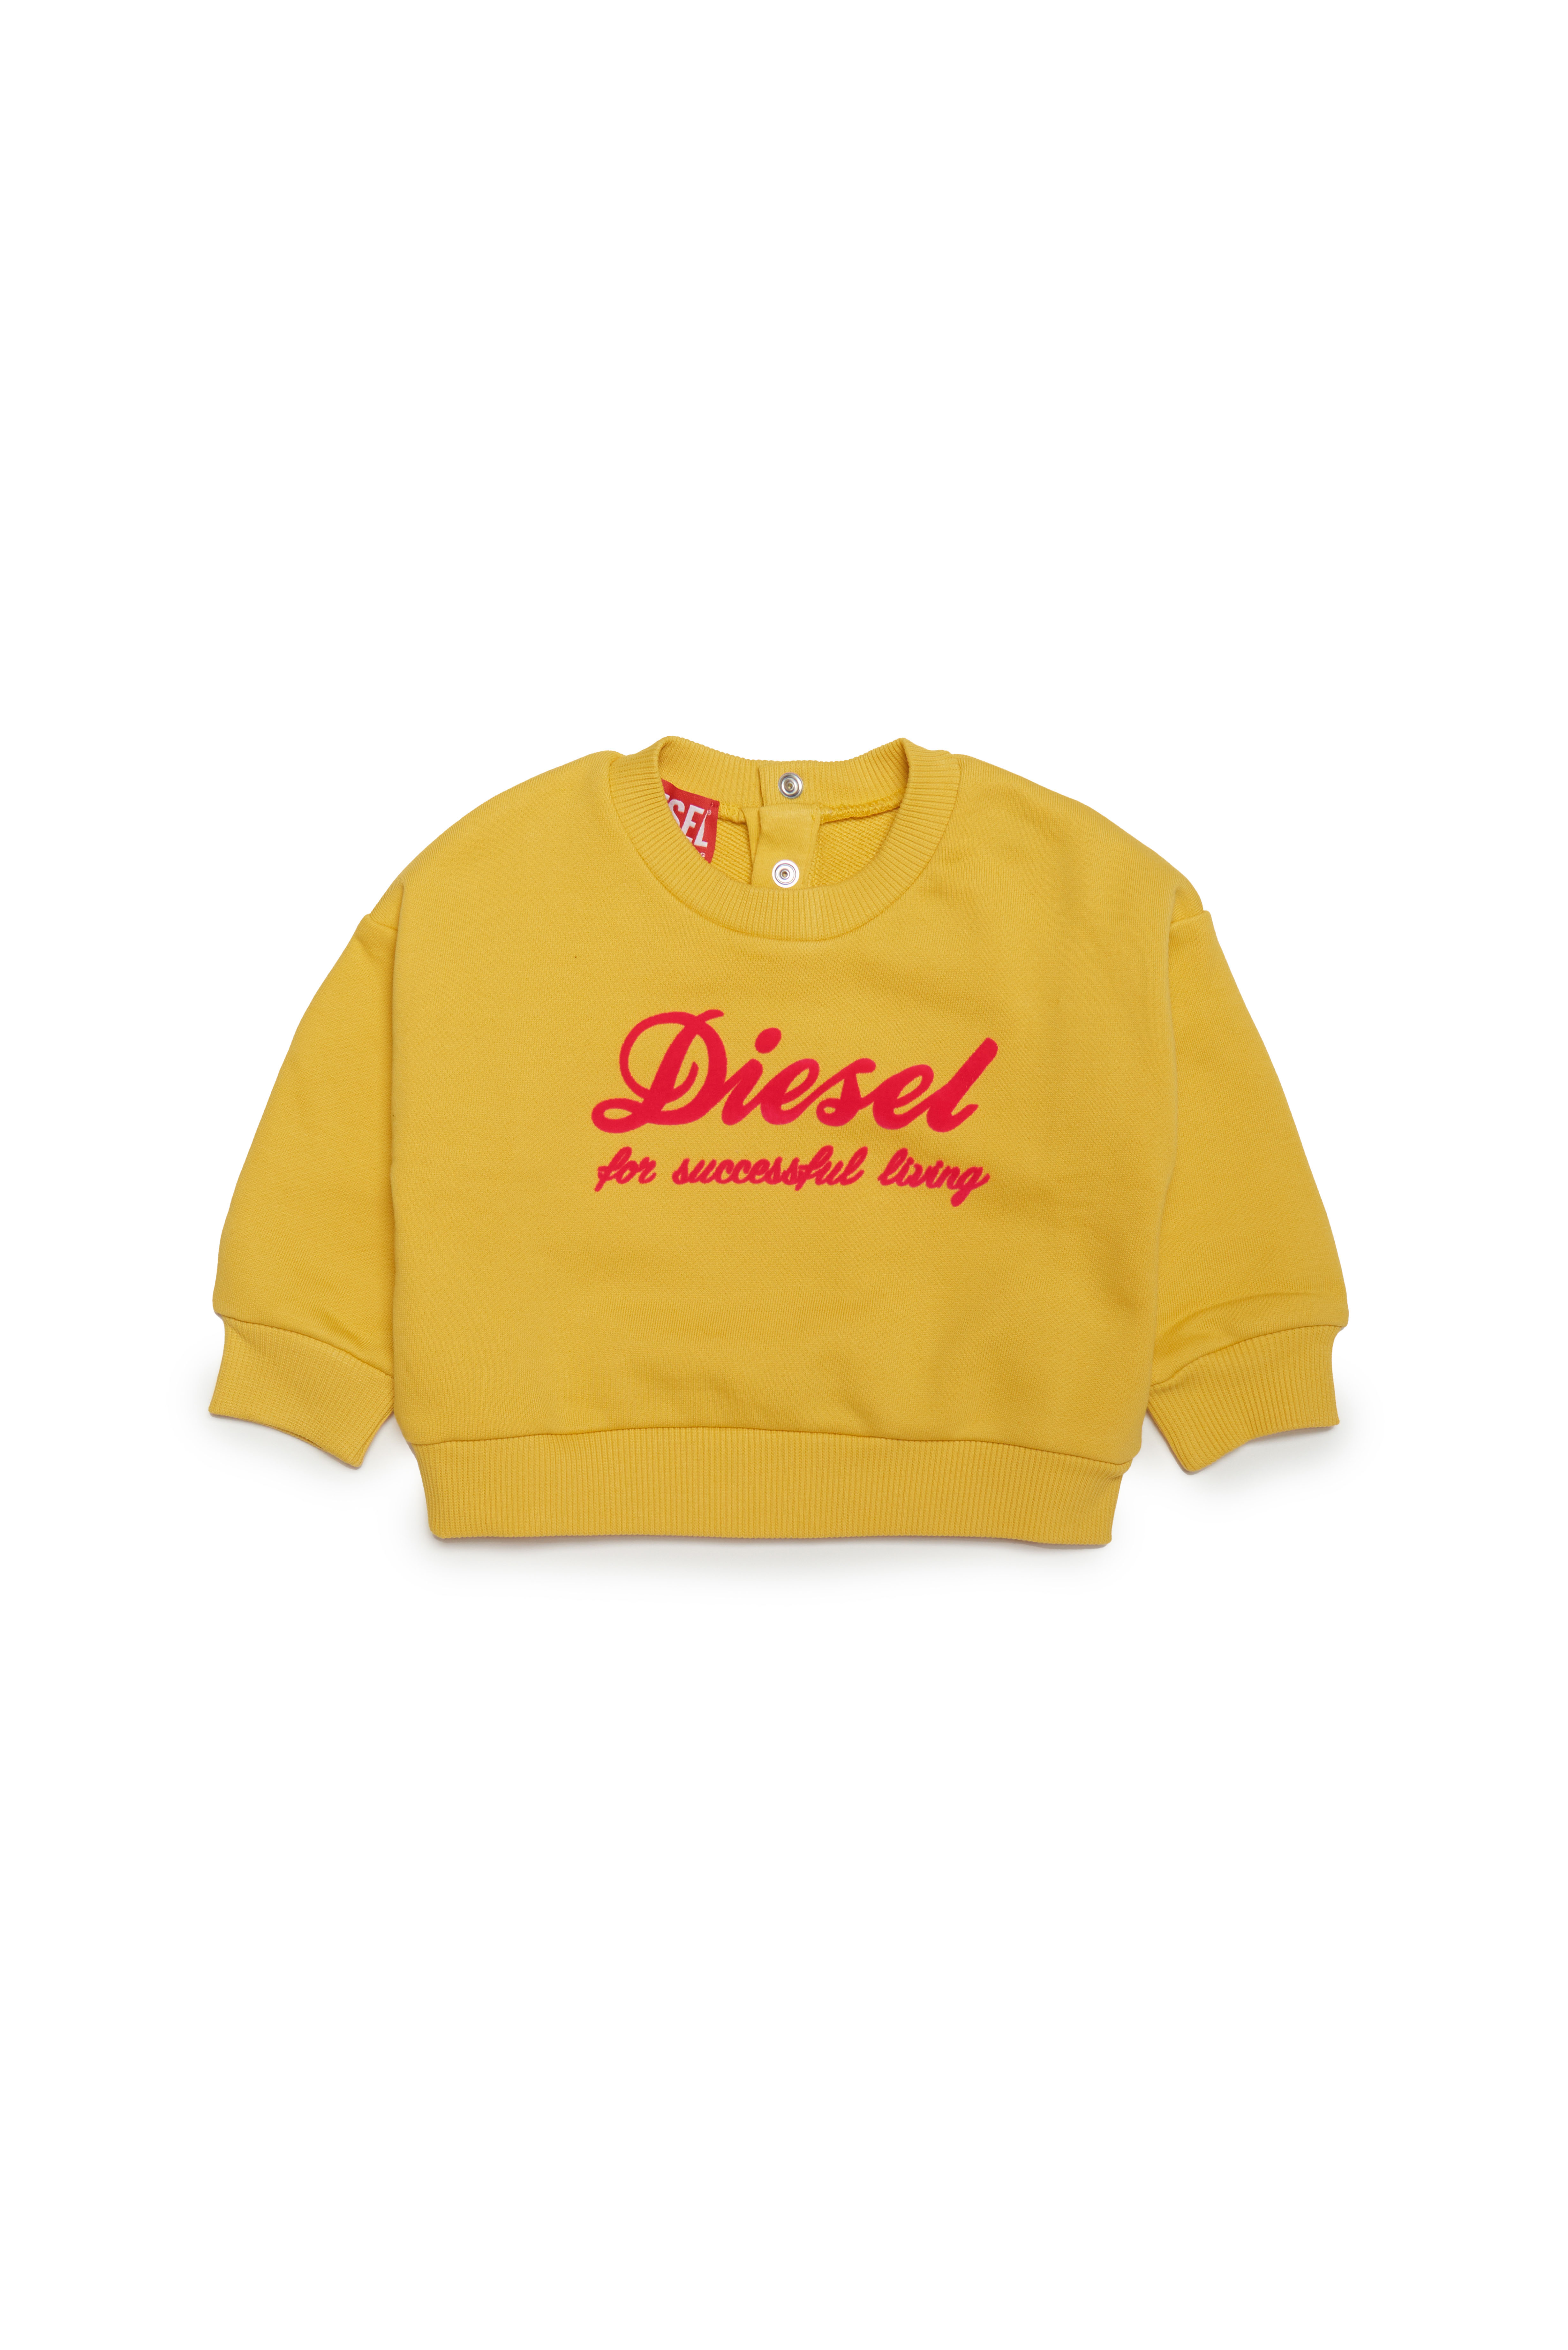 Diesel - Sweatshirt mit handschriftlichem Logo - Sweatshirts - Damen - Gelb